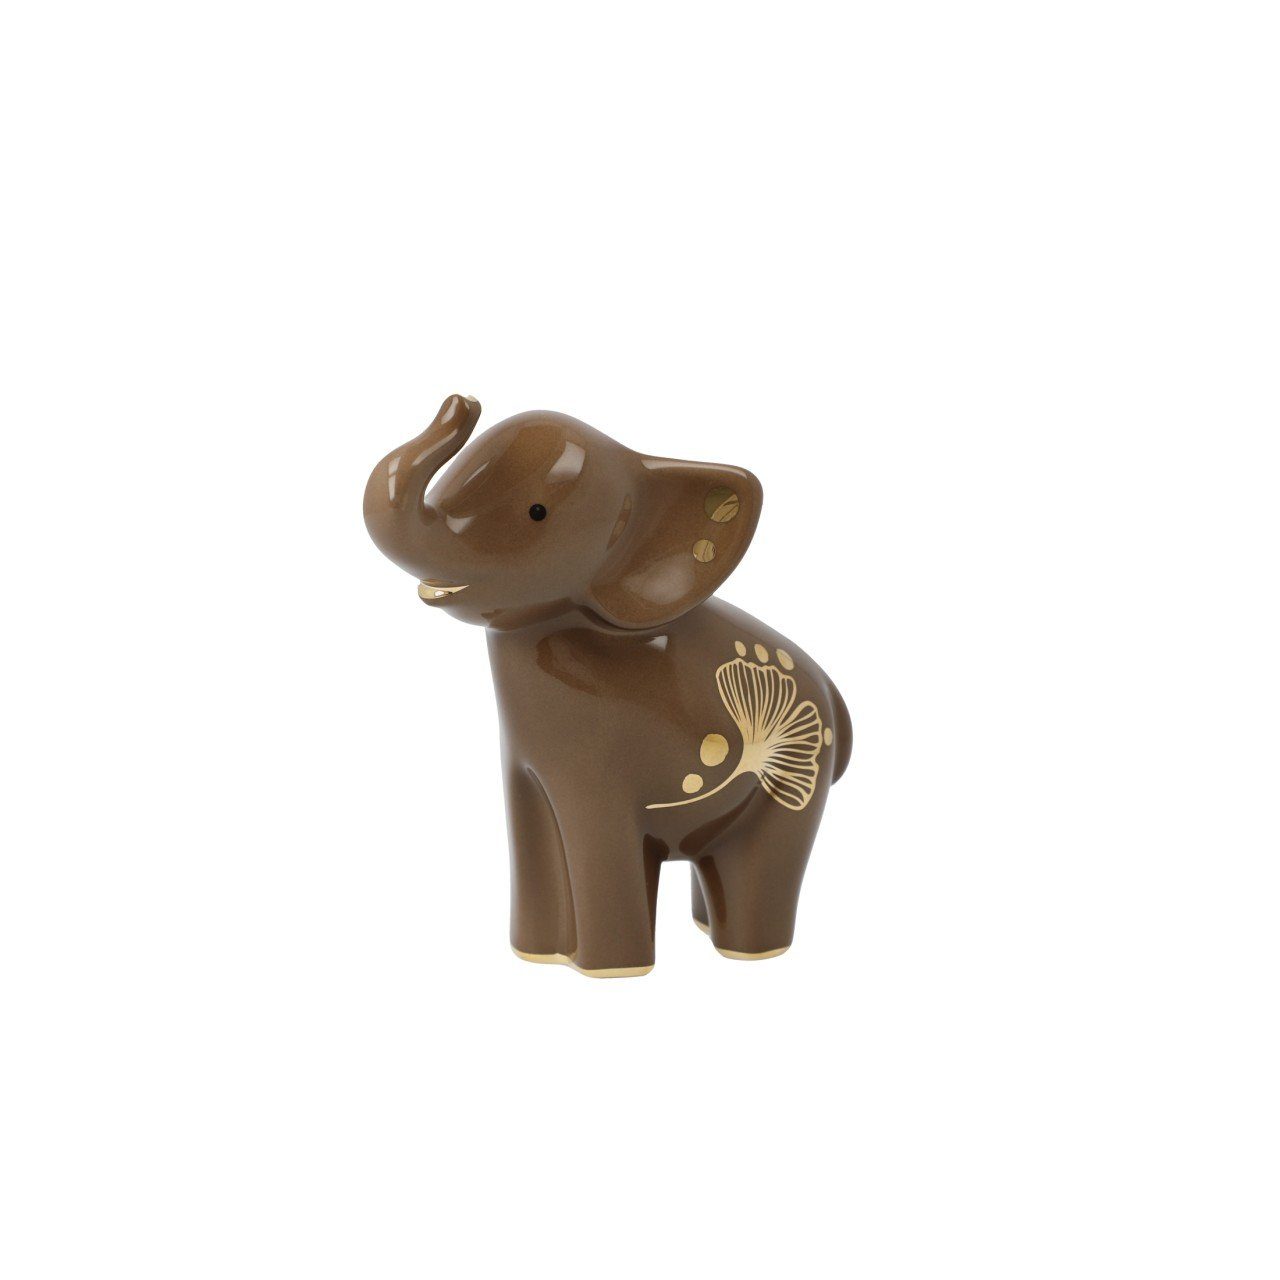 Mit B:6cm Elephant, Goebel L:11cm zum Liebe Detail gestaltet H:11cm Braun Porzellan, viel Dekofigur